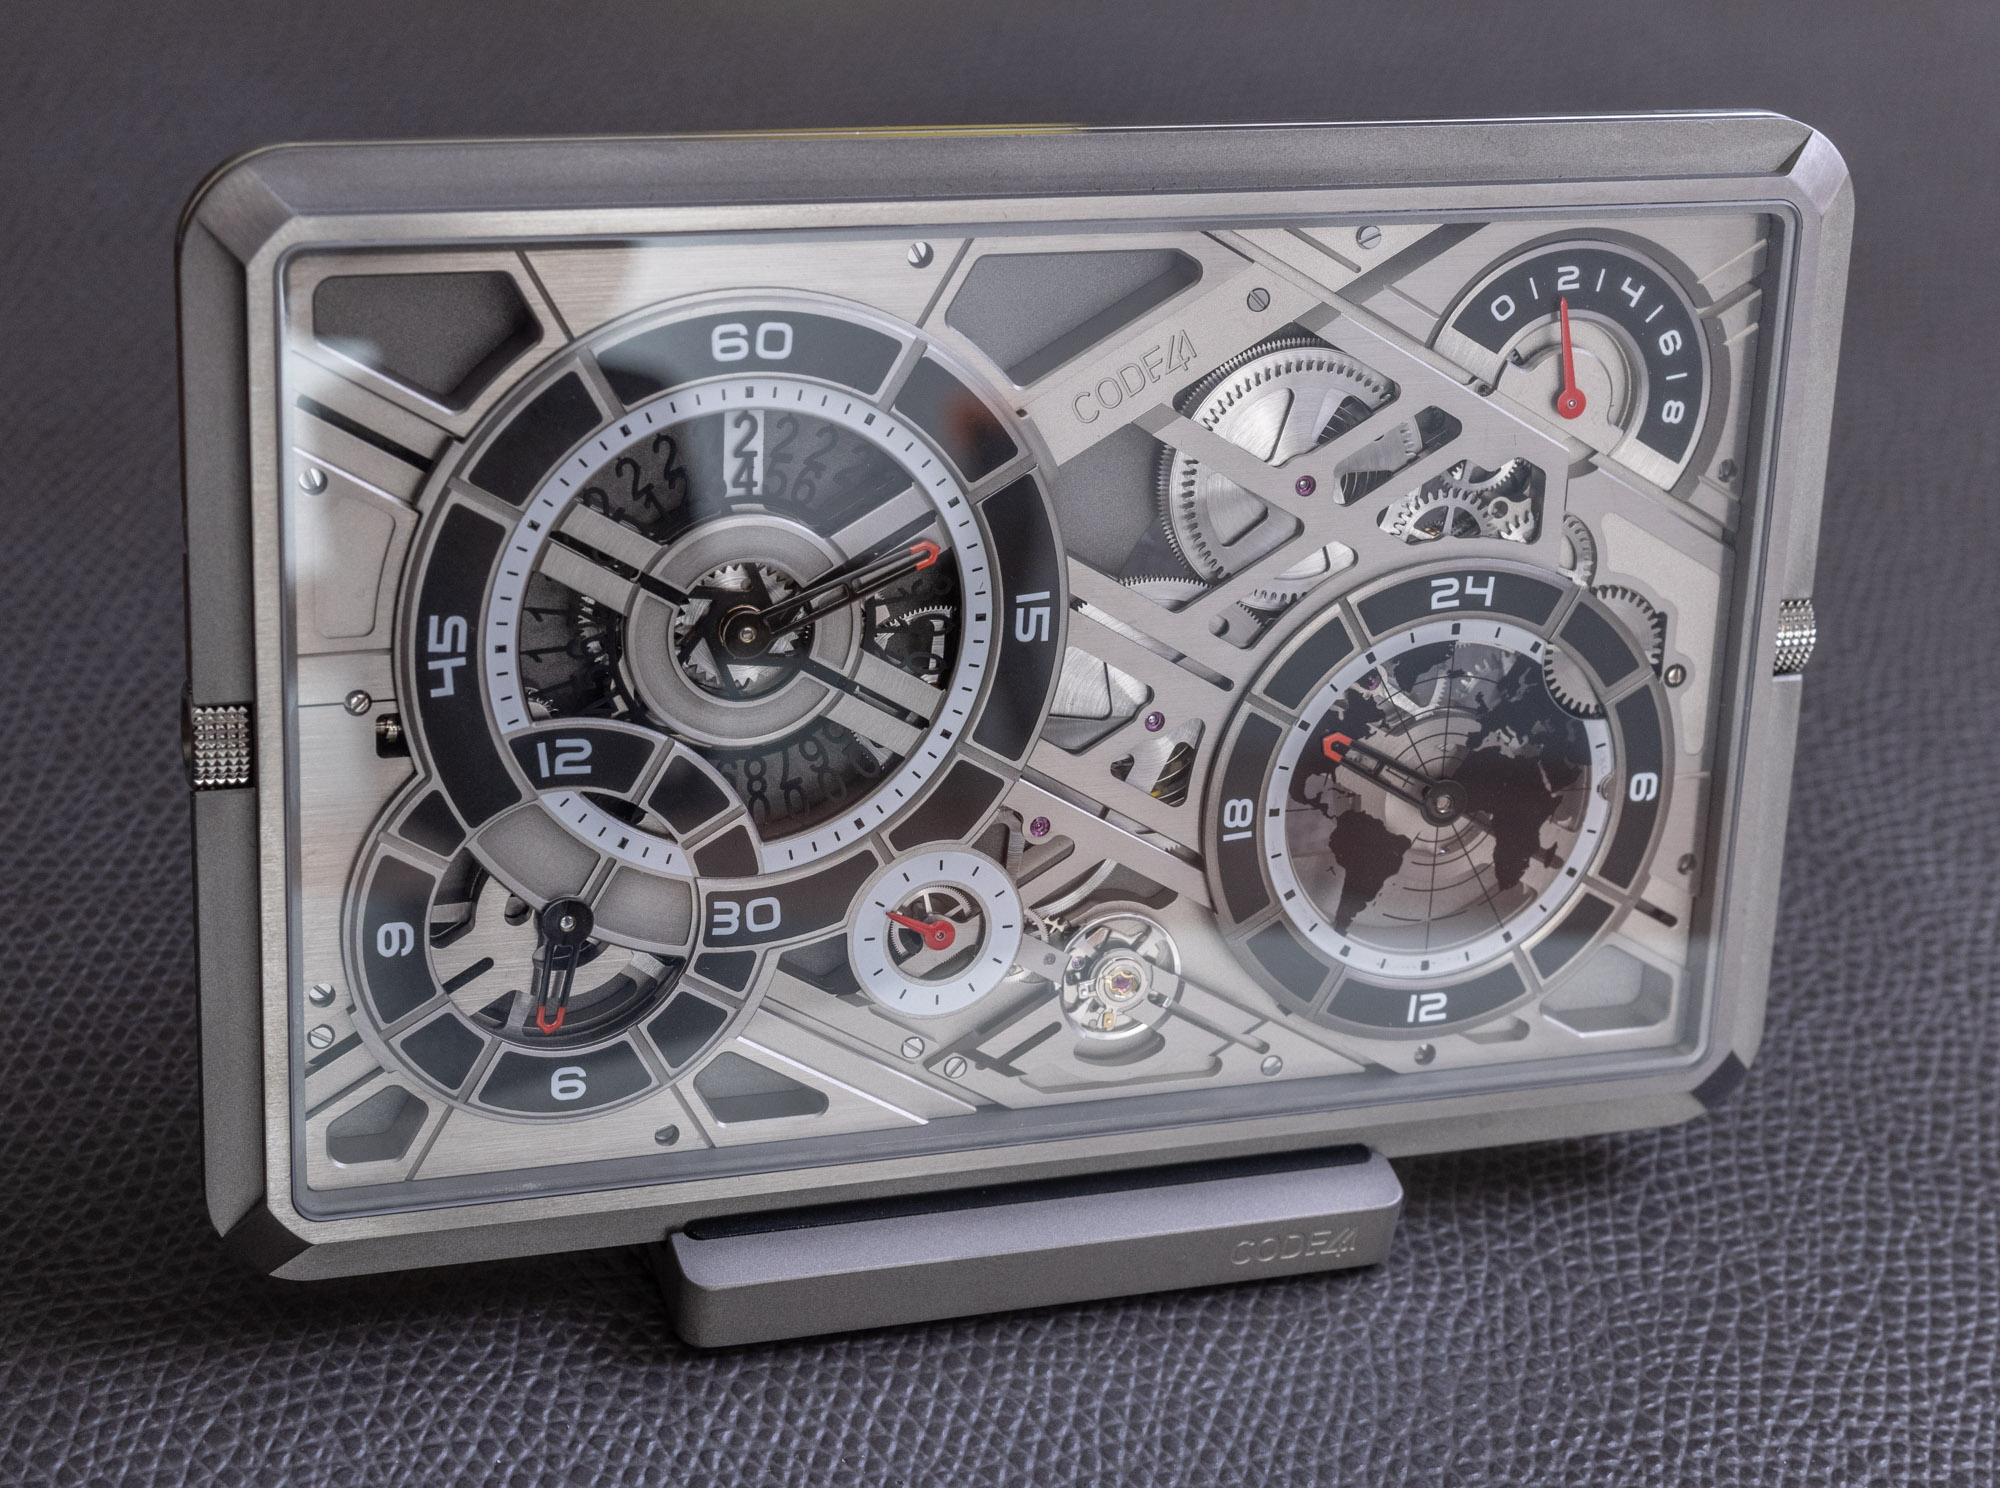 slim & titanium-cut pocket watch 'mecascape' by CODE41 shows